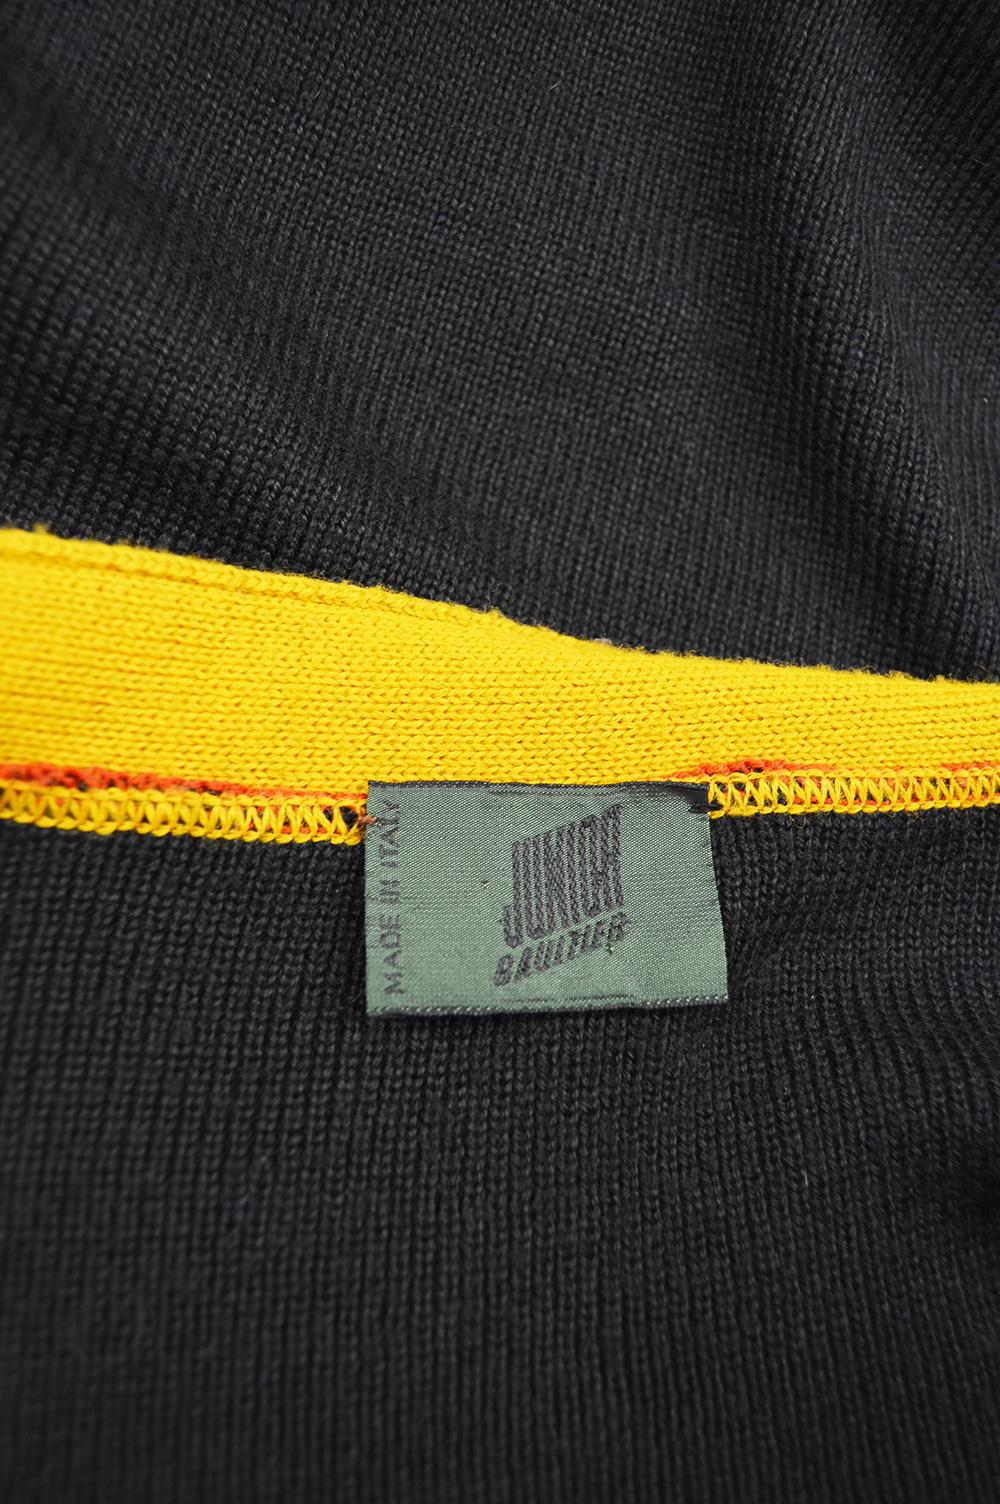 Jean Paul Gaultier Men's Vintage Color Block Zip Up Cardigan Sweater, 1990s 2